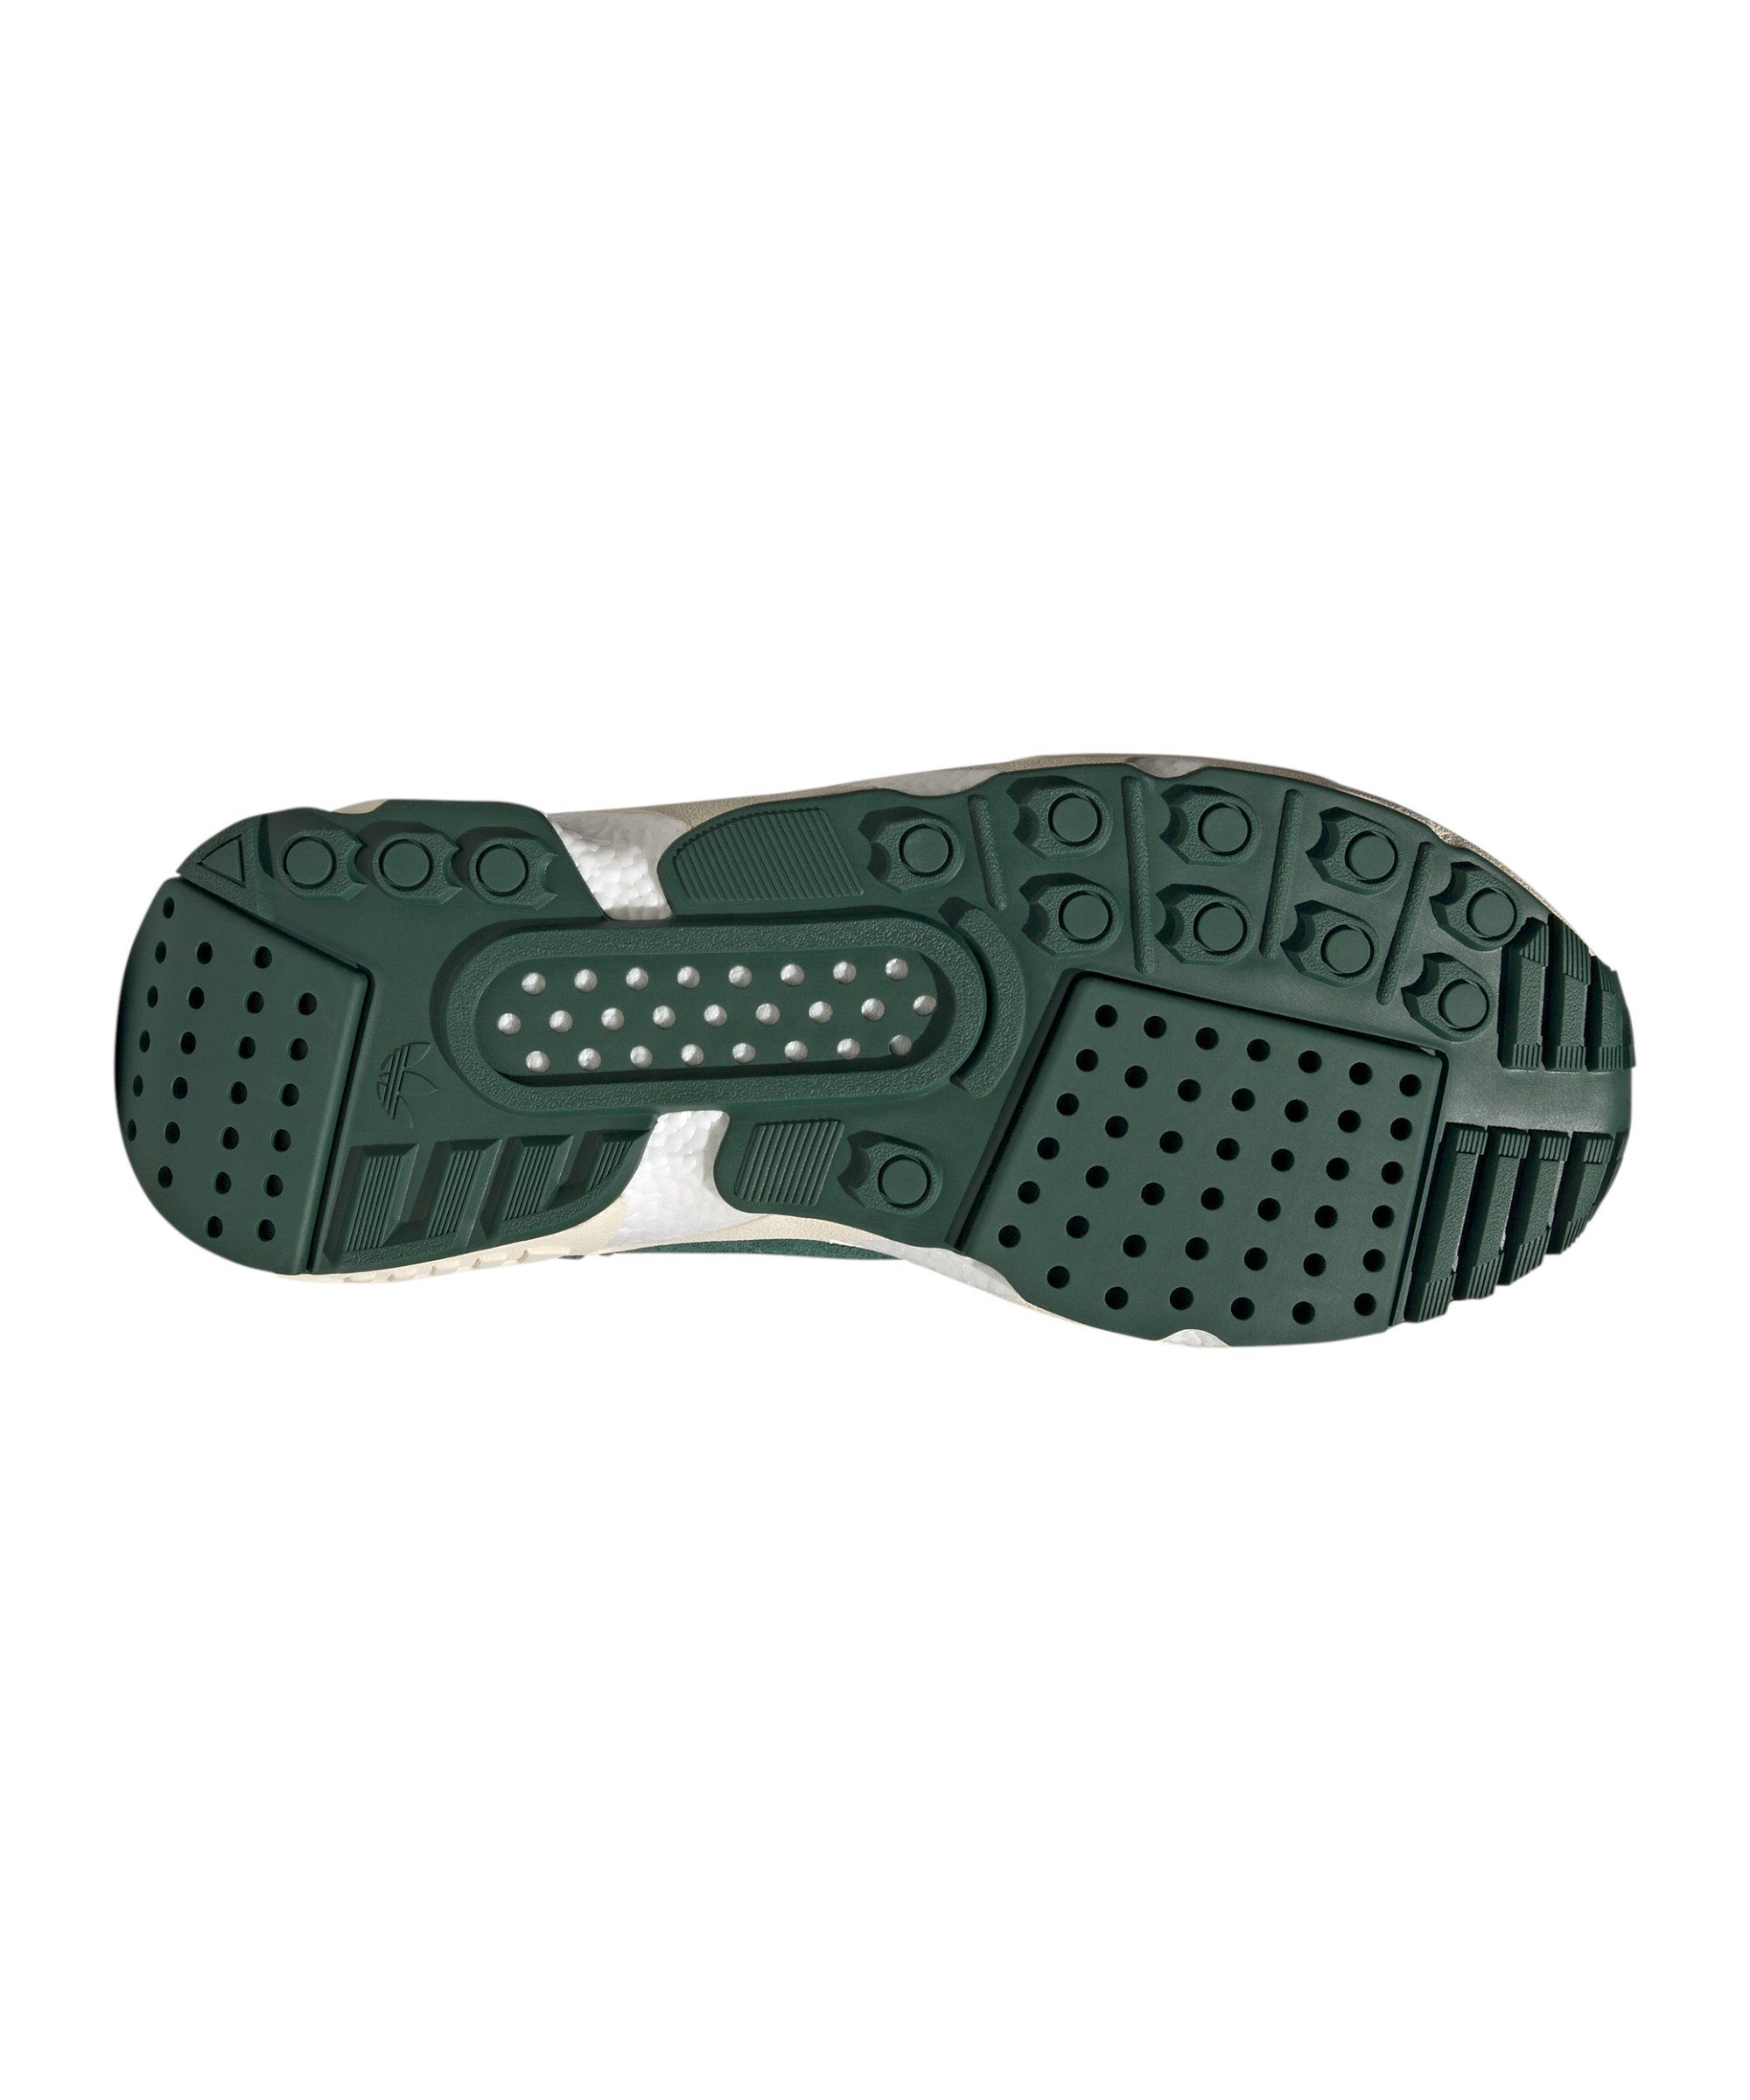 gruenbeige Boost adidas Originals 22 ZX Sneaker